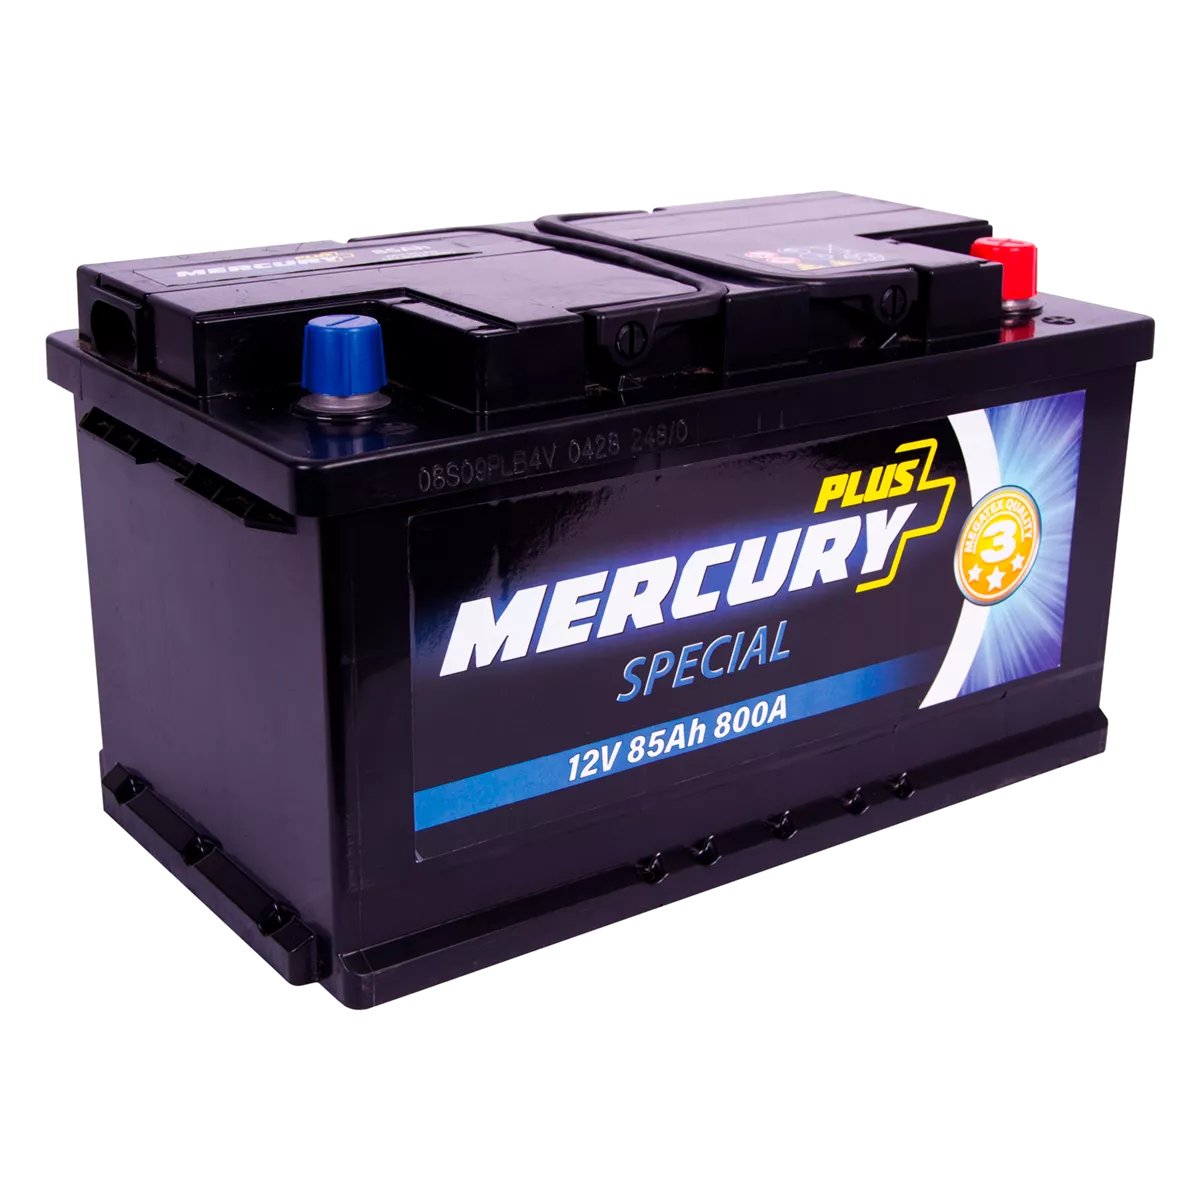 Автомобильный аккумулятор MERCURY SPECIAL Plus 6СТ-85Ah 800A АзЕ (P75526)